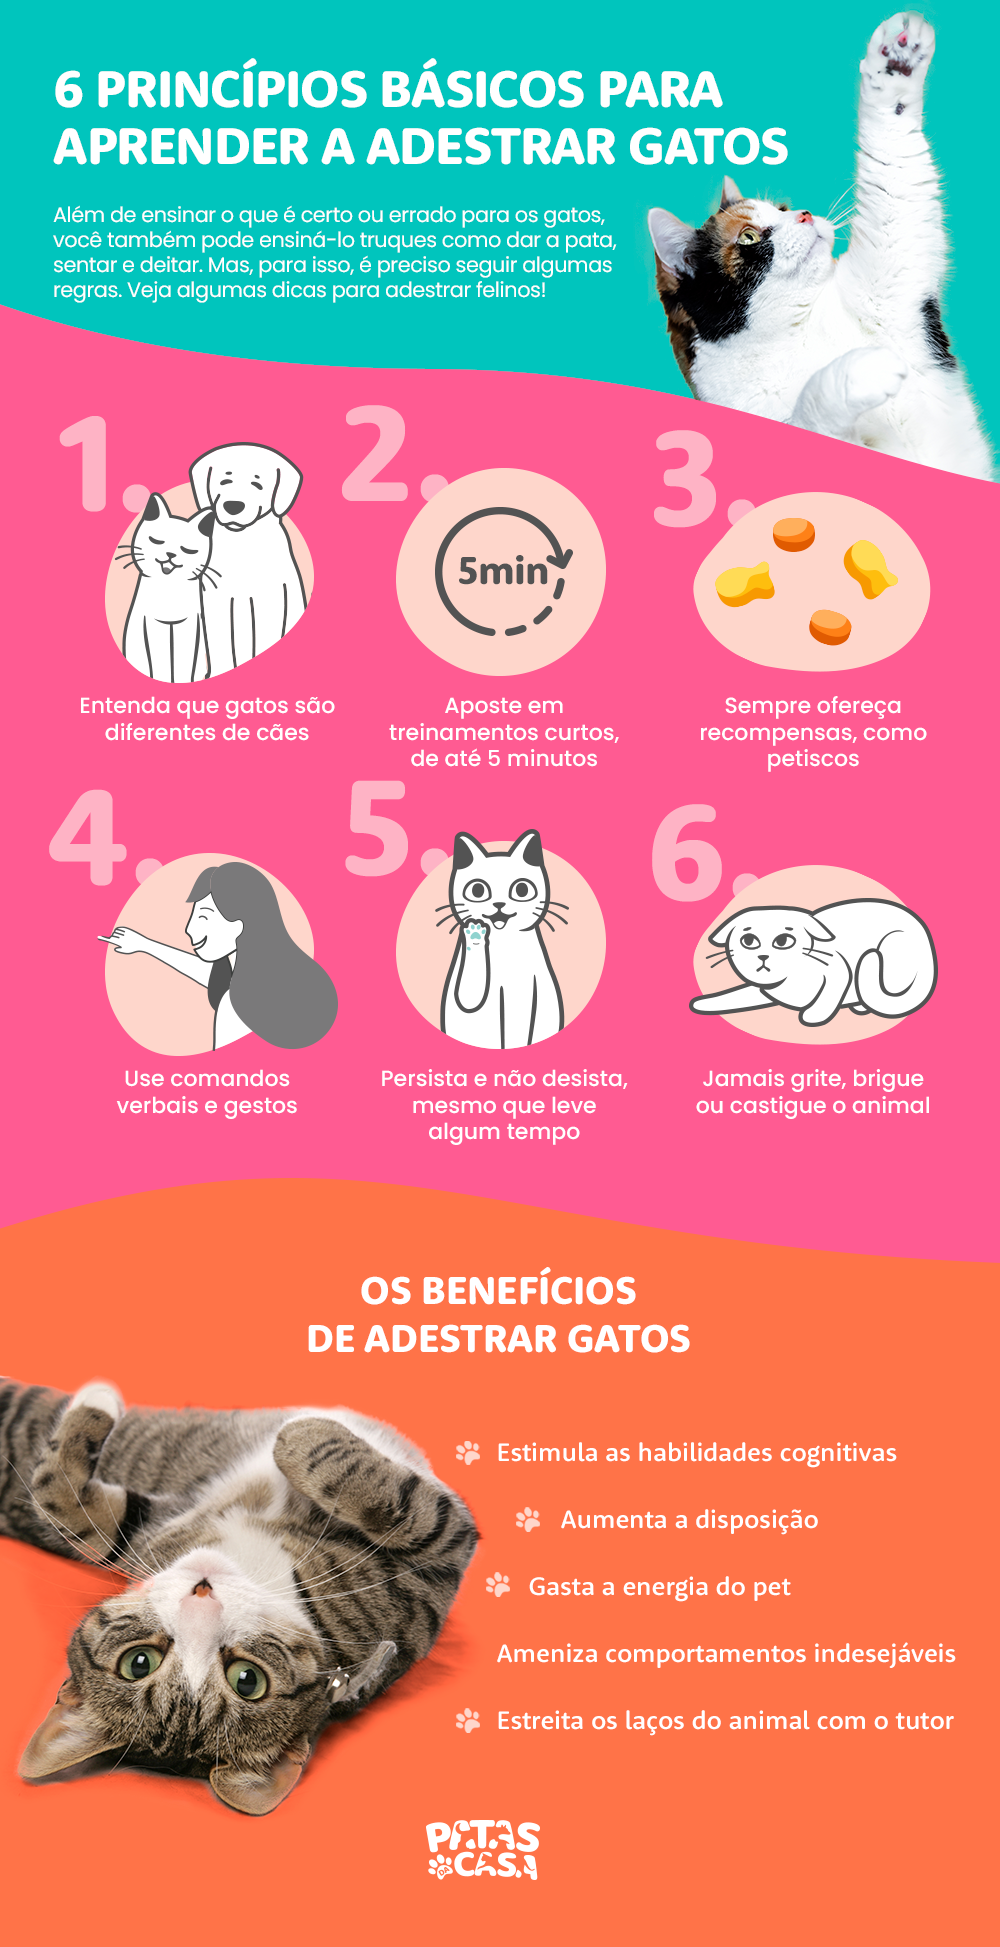 Infográfico com um bloco mostrando seis dicas de como adestrar gatos e outro bloco pontuando os benefícios do adestramento de gatos, com um gato rajado e branco deitado